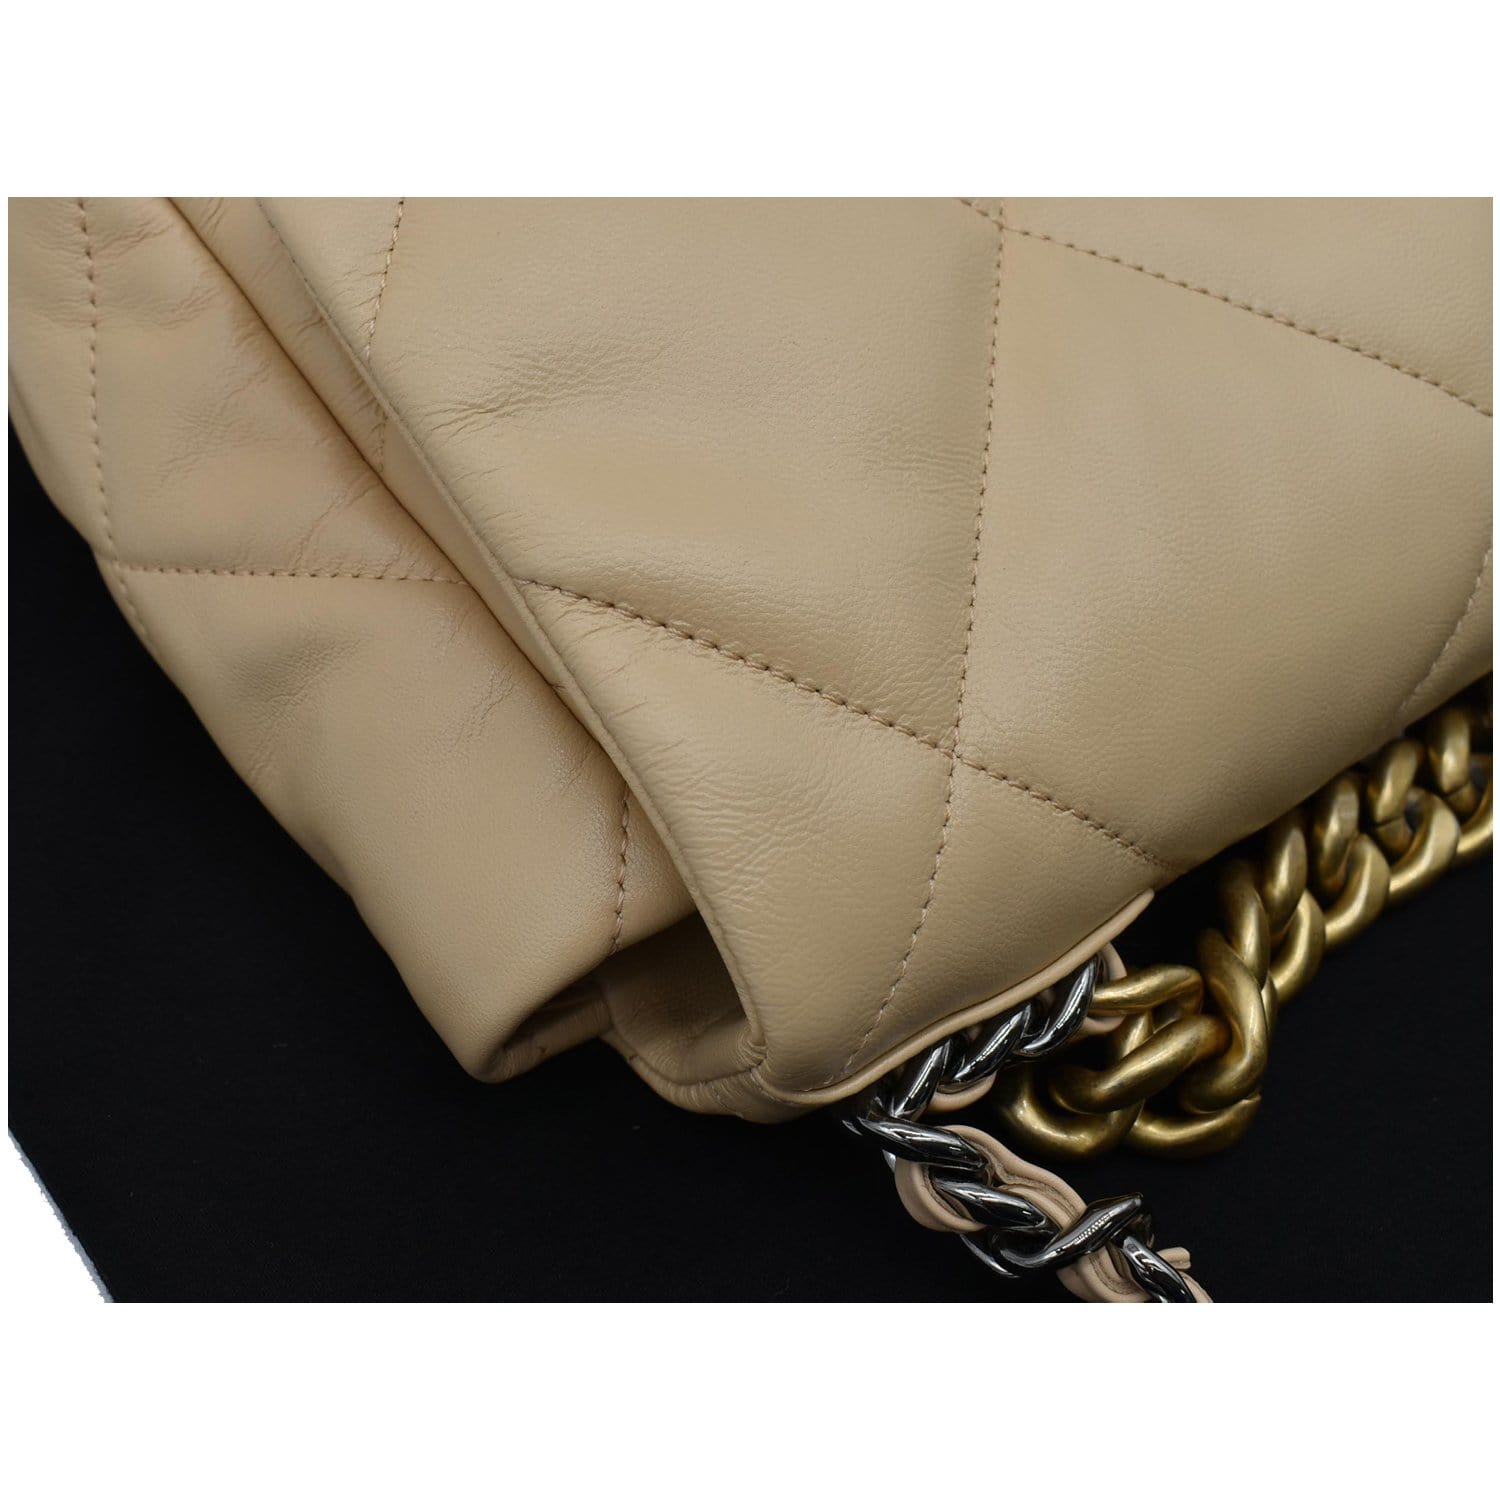 CHANEL 19 Large Lambskin Leather Shoulder Bag Nude - 10% OFF